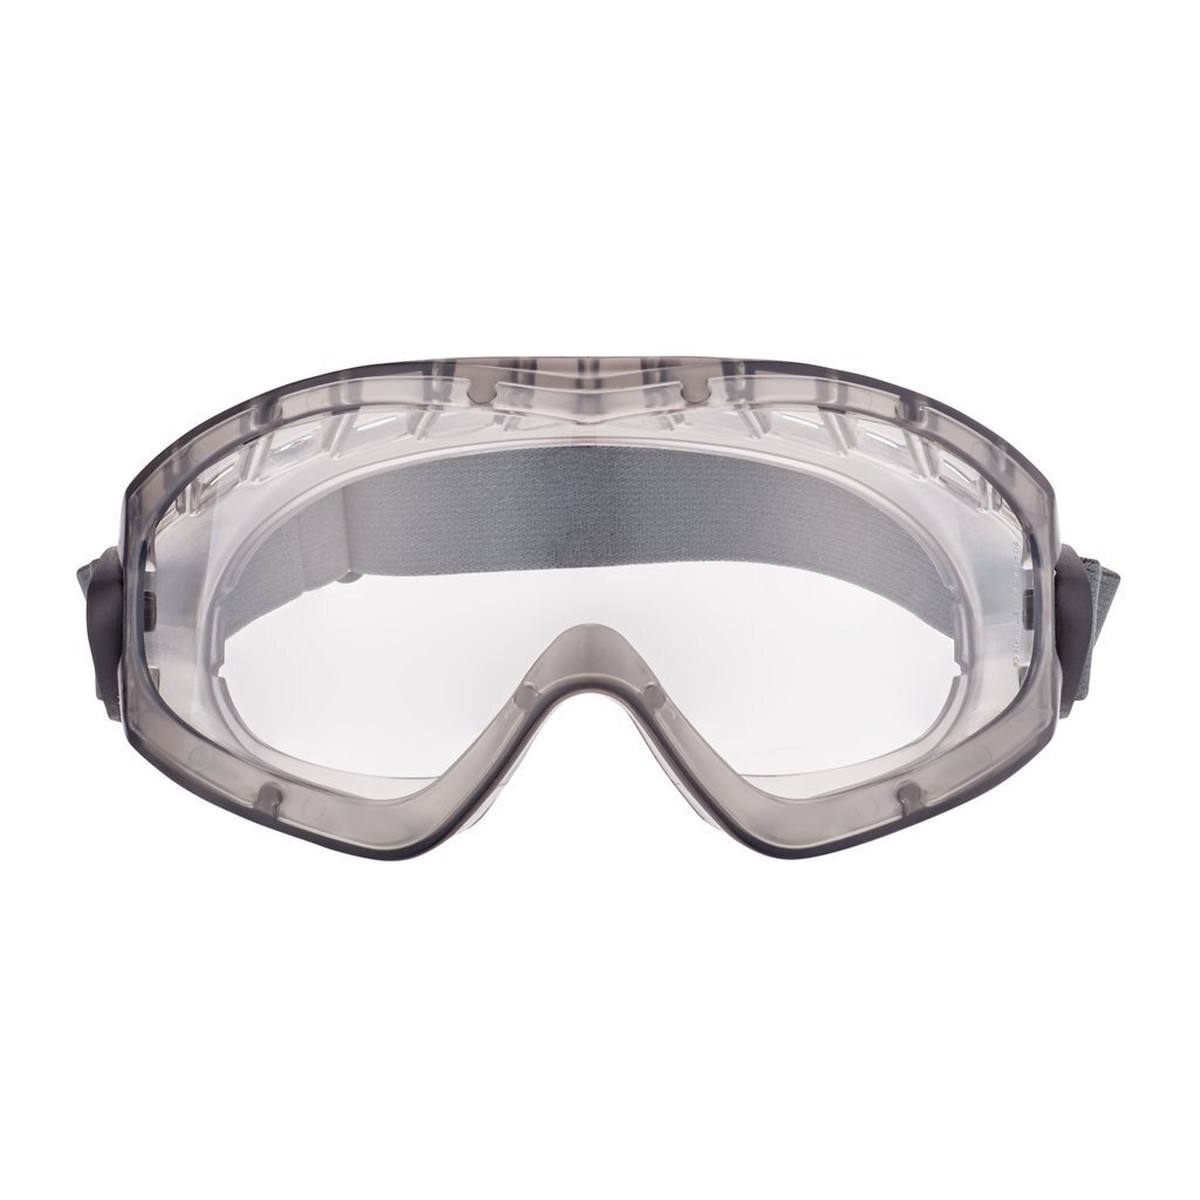 3M 2891-SGAF Full-vision goggles, with ventilation slit, adjustable hinges, anti-fog coating